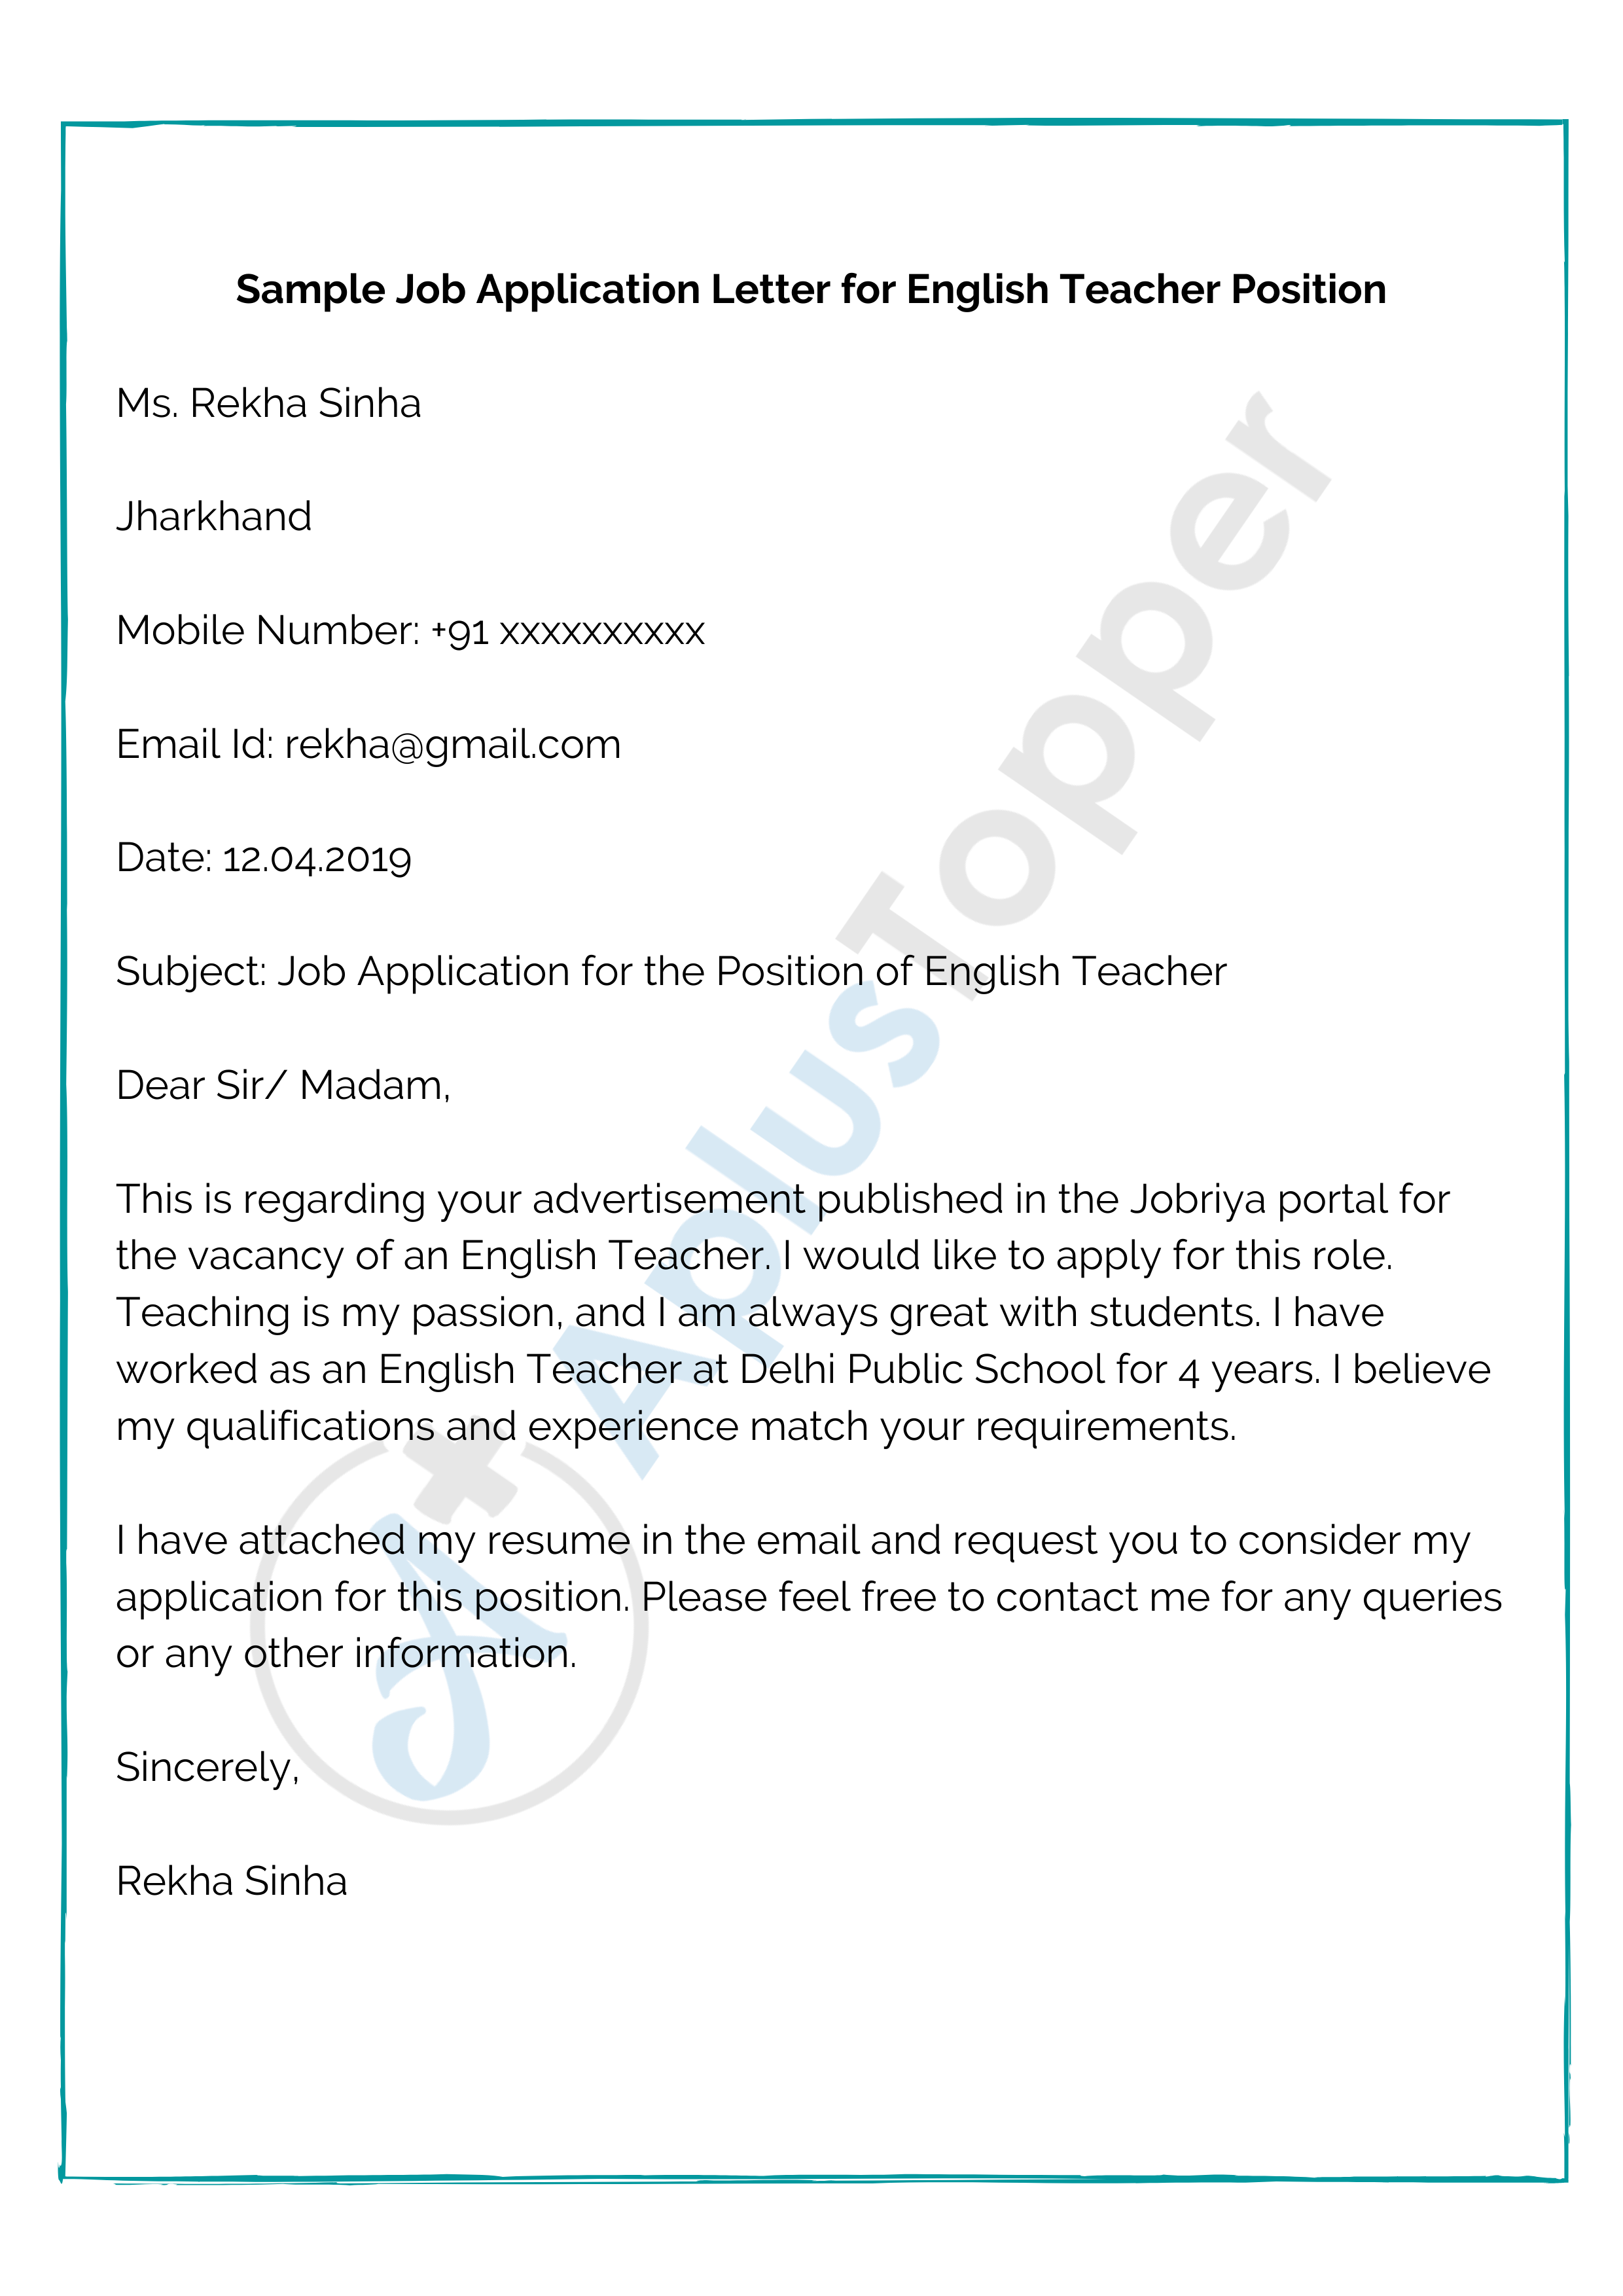 Exemple de lettre de demande d'emploi pour un poste de professeur d'anglais